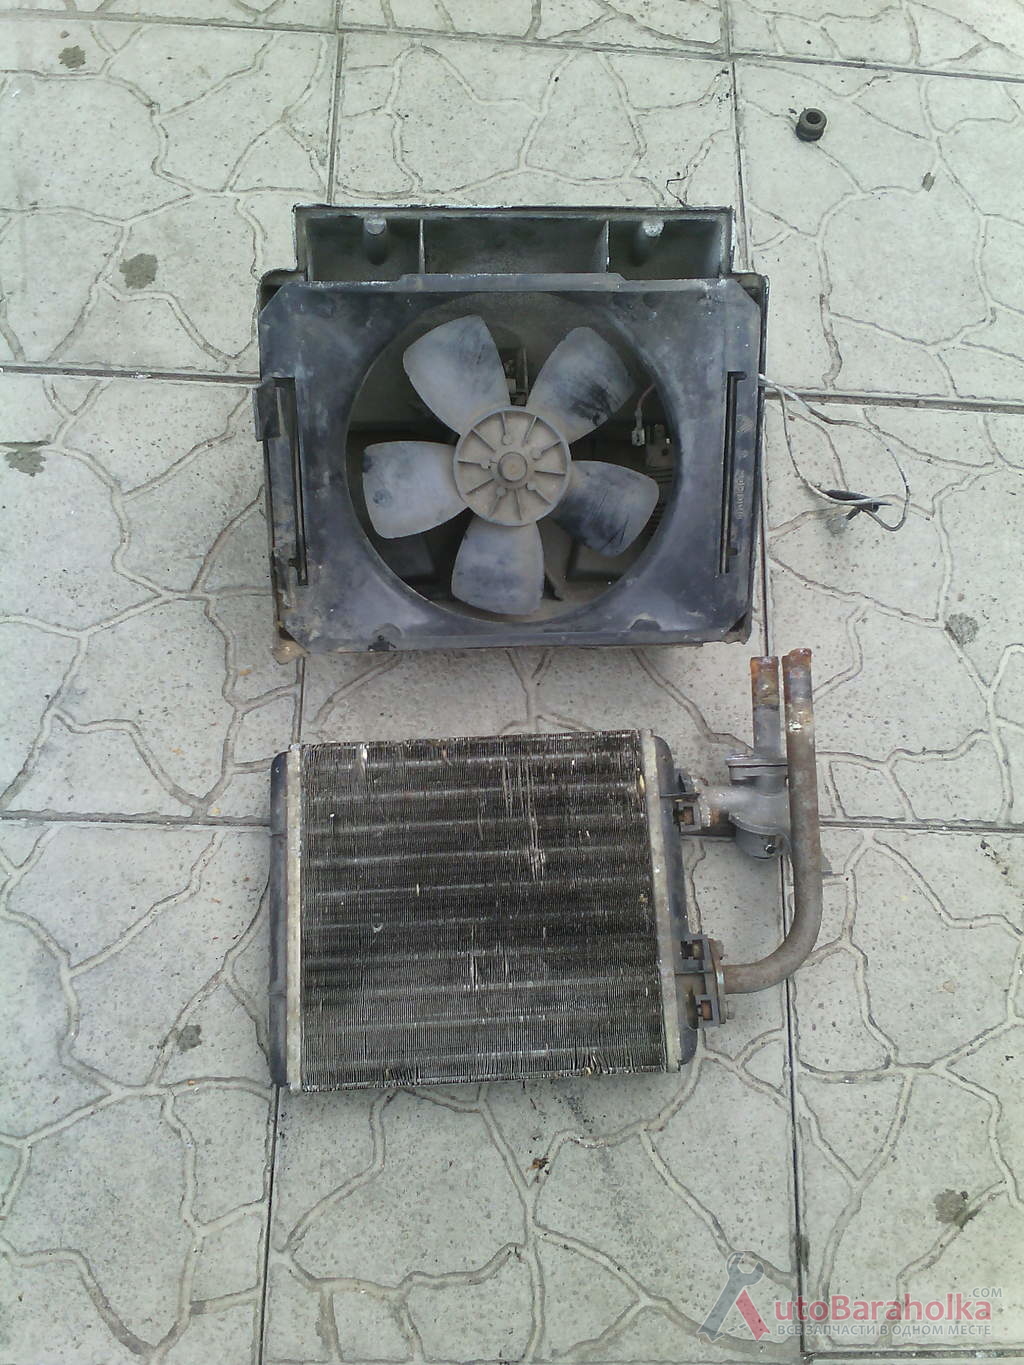 Продам Радиатор печки с вентилятором ВАЗ в сборе, радиатор не течёт Харьков